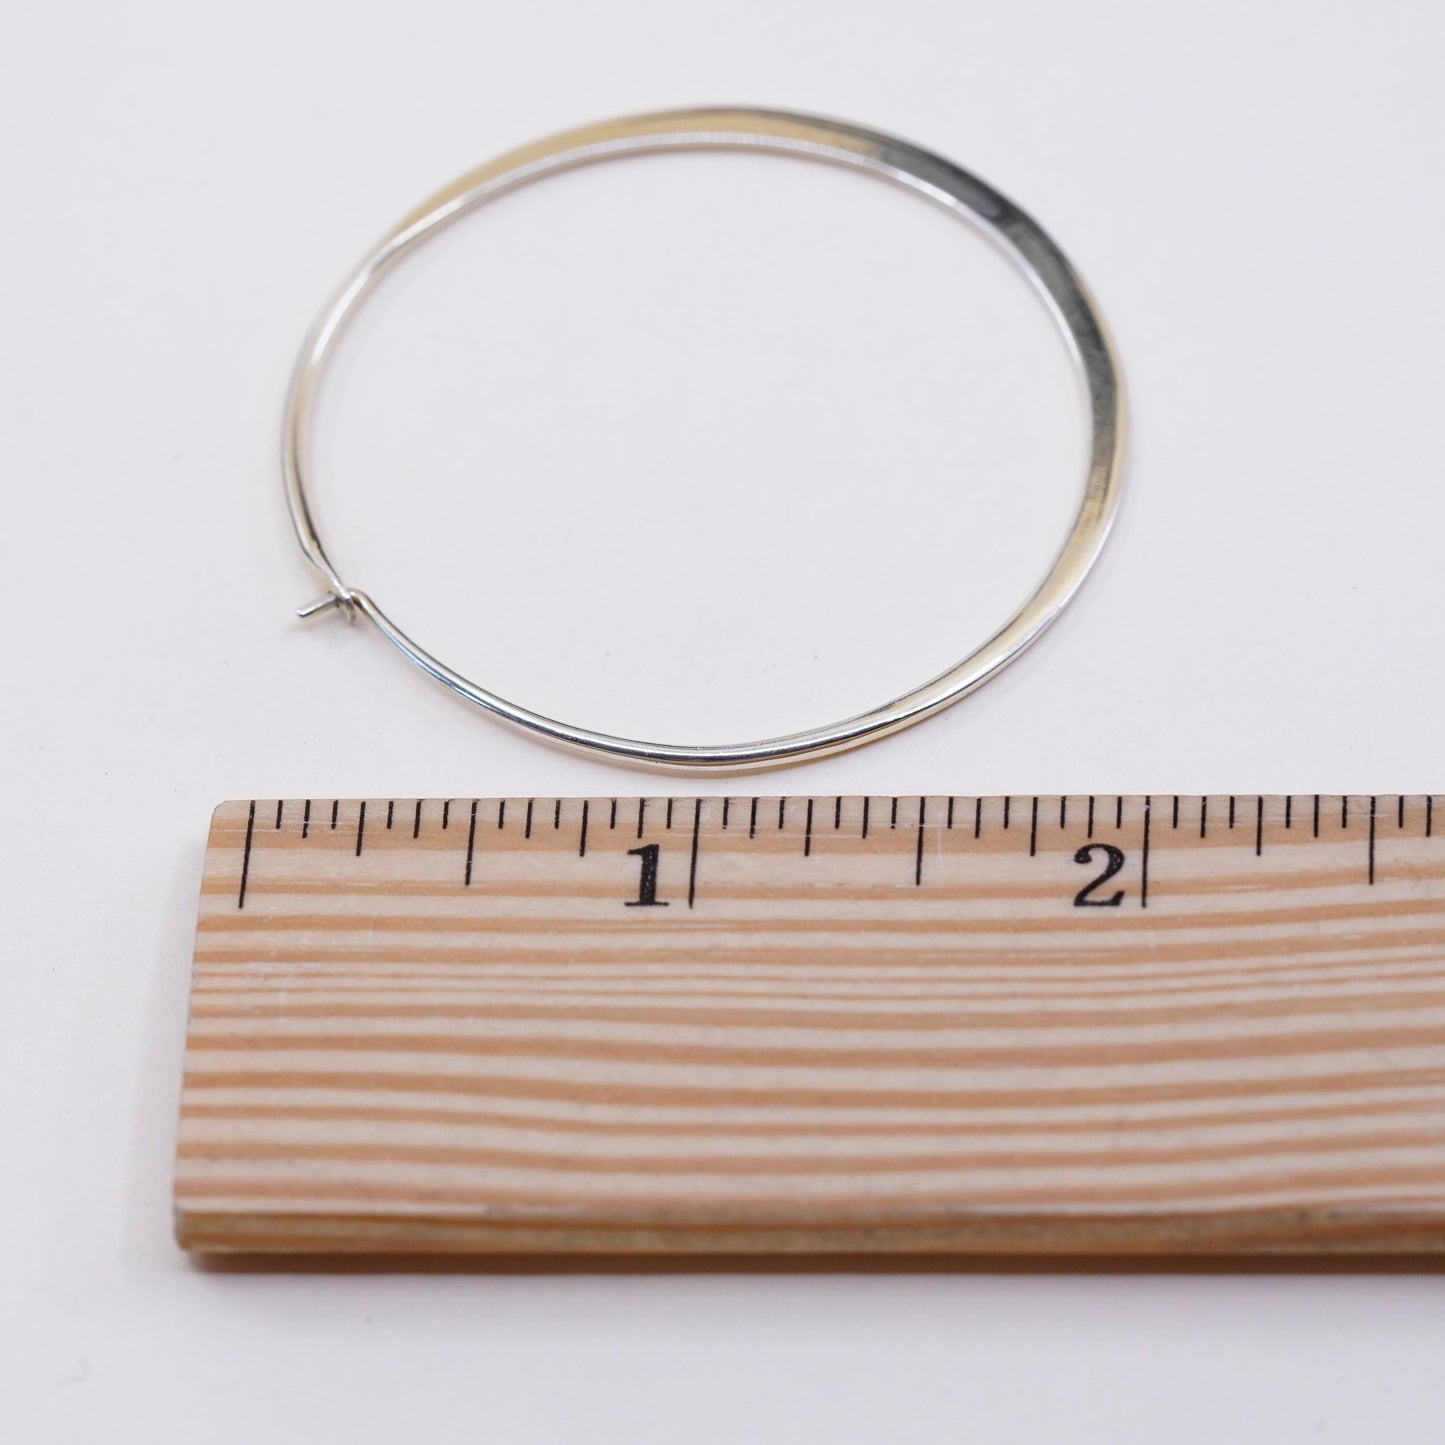 1.75” vermeil gold over sterling silver earrings, primitive flatten hoops